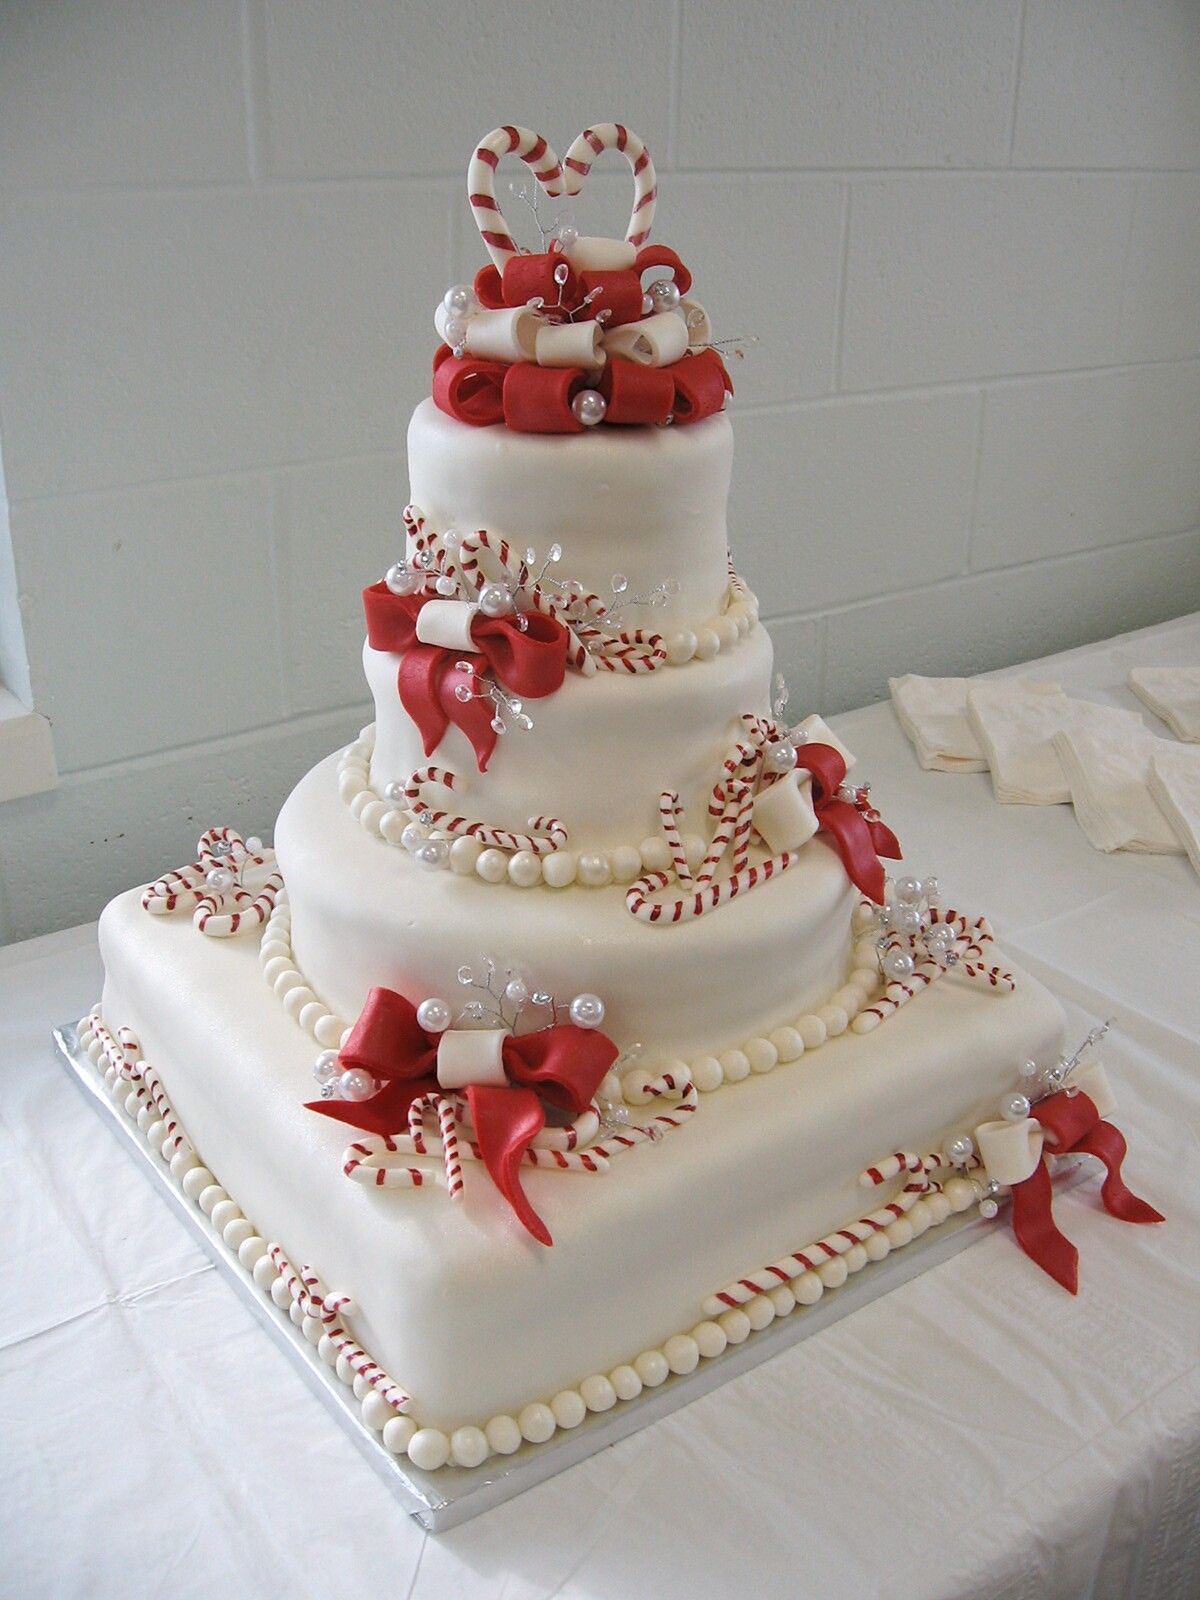 Wedding Cake Inspiration with a Christmas Theme